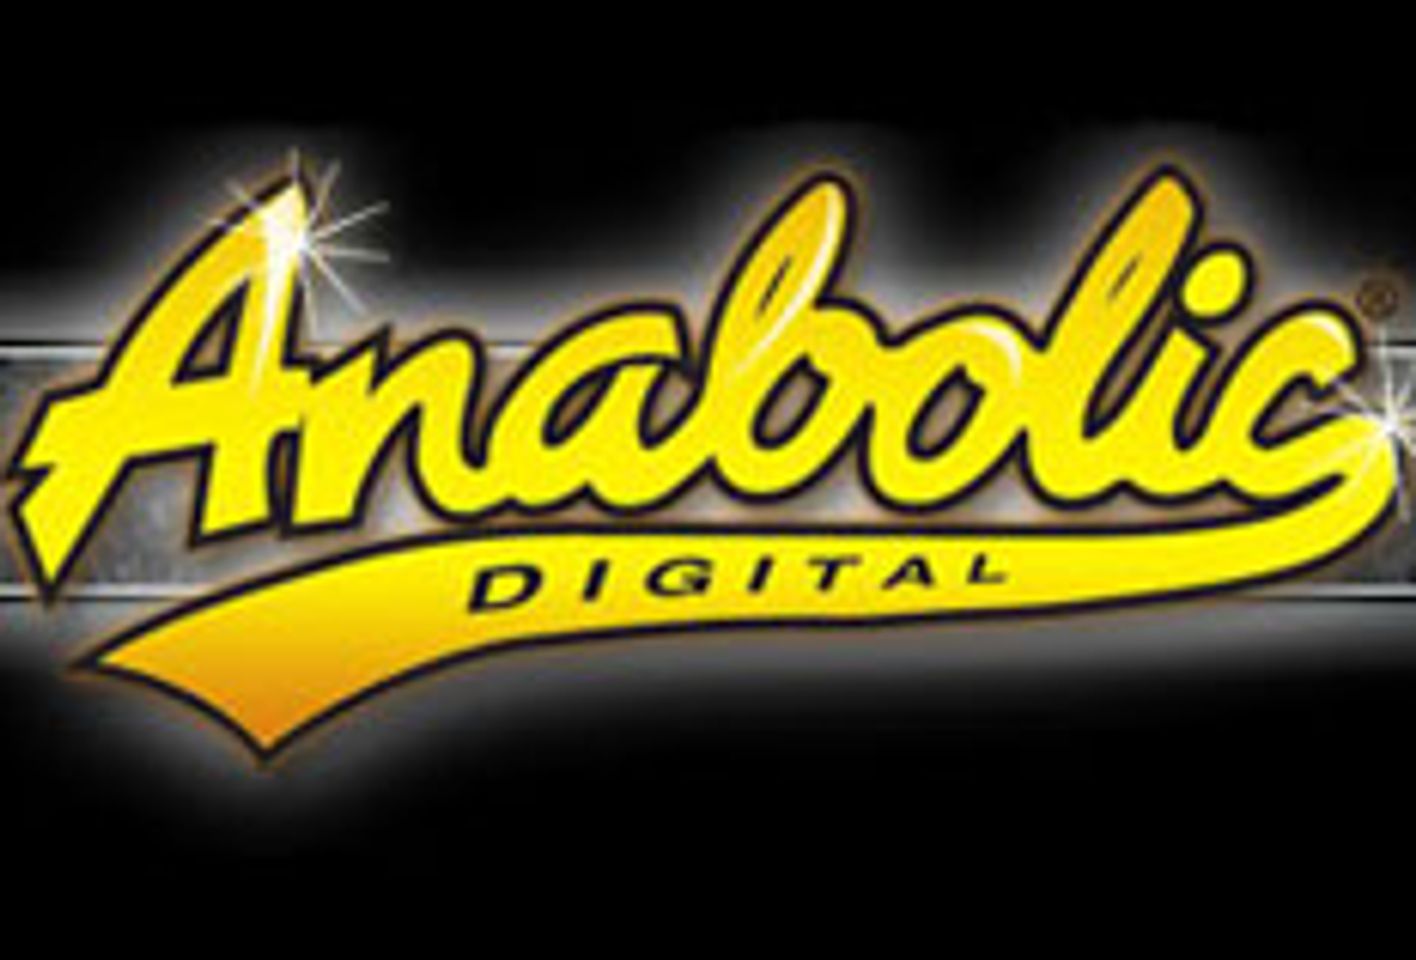 Anabolic Co-Sponsors NY Party for HardRoks.com